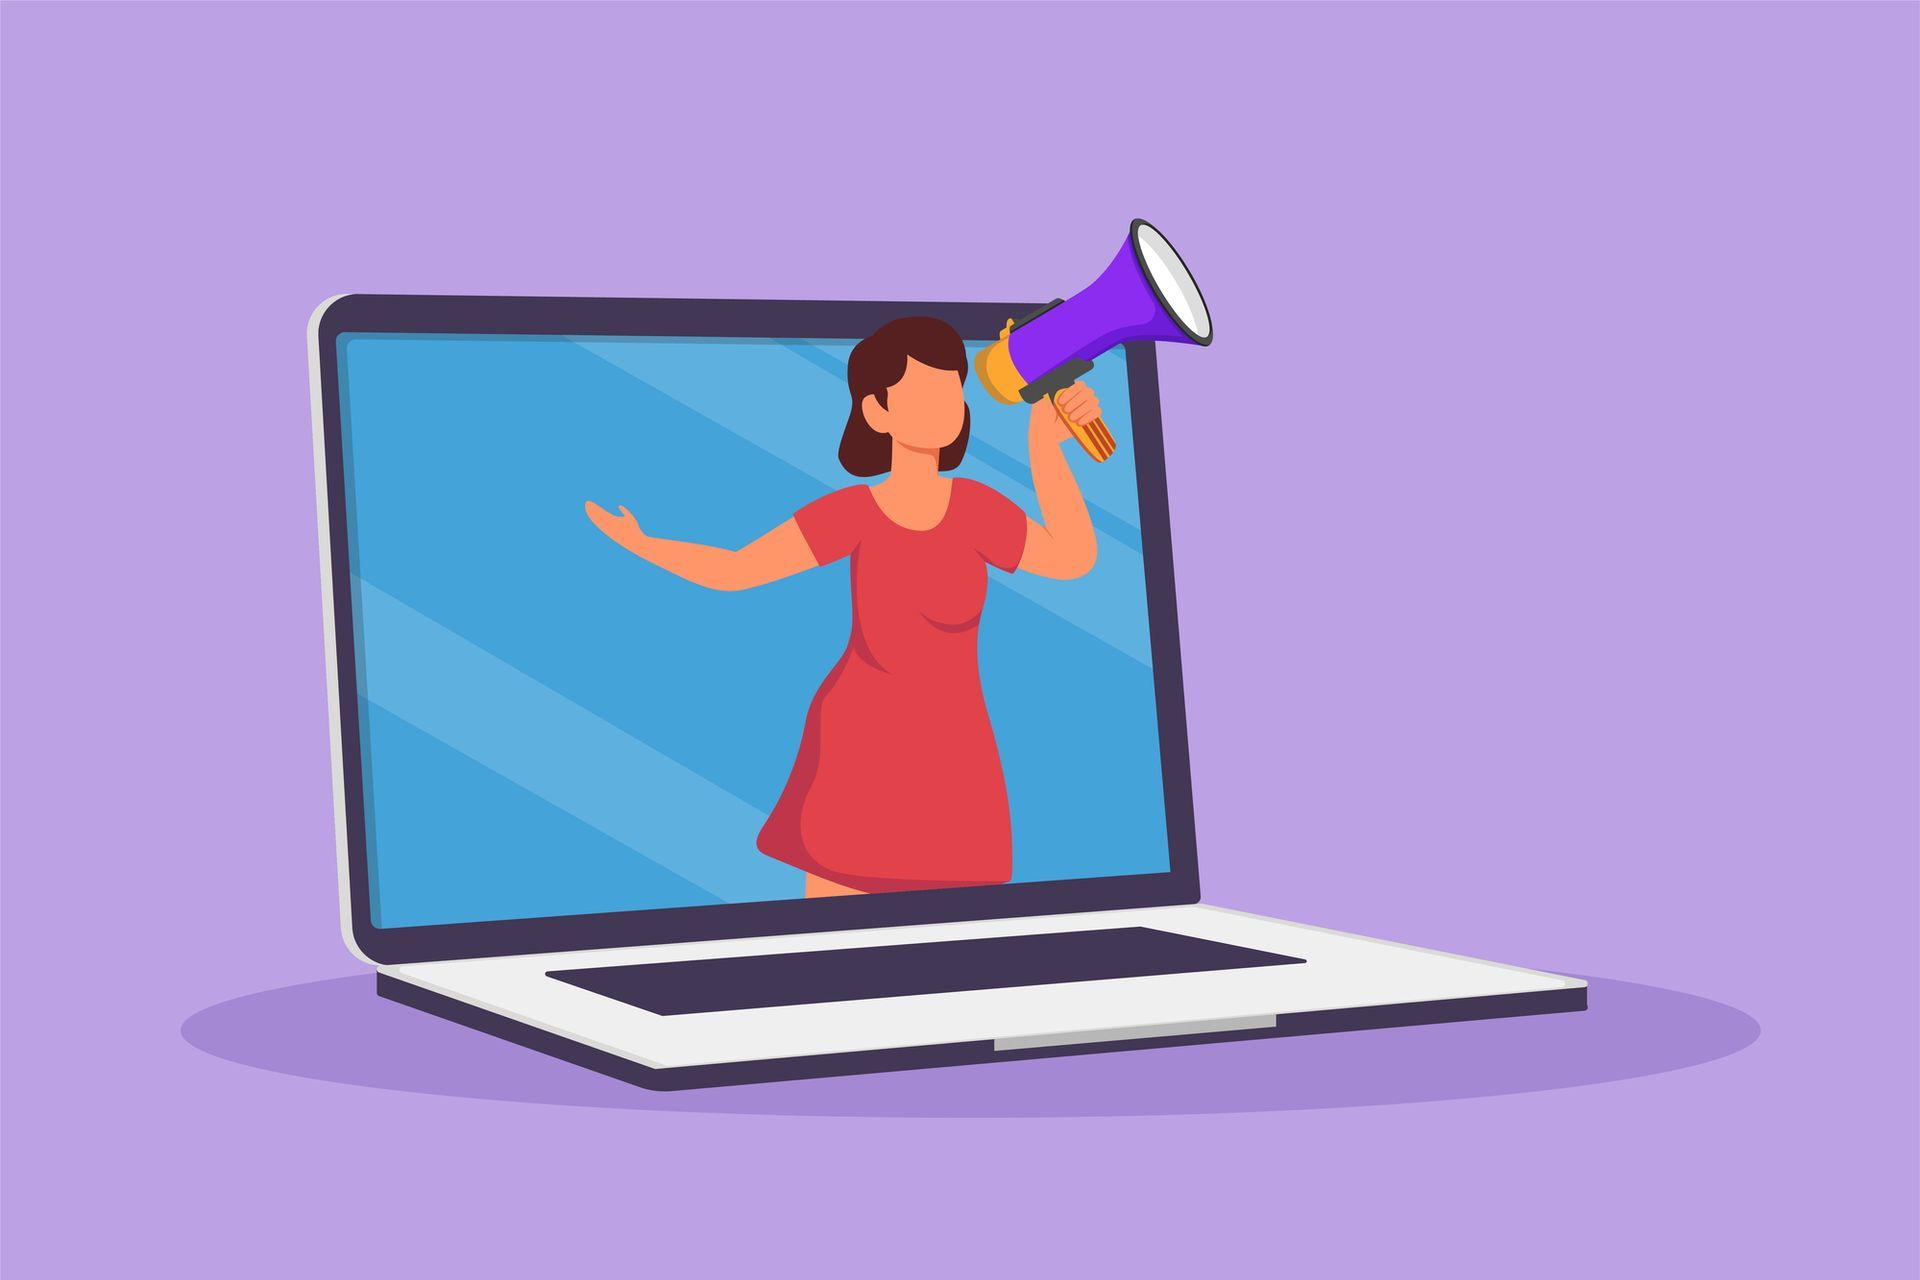 Illustratie van een vrouw die door een megafoon schreeuwt vanuit een laptopscherm